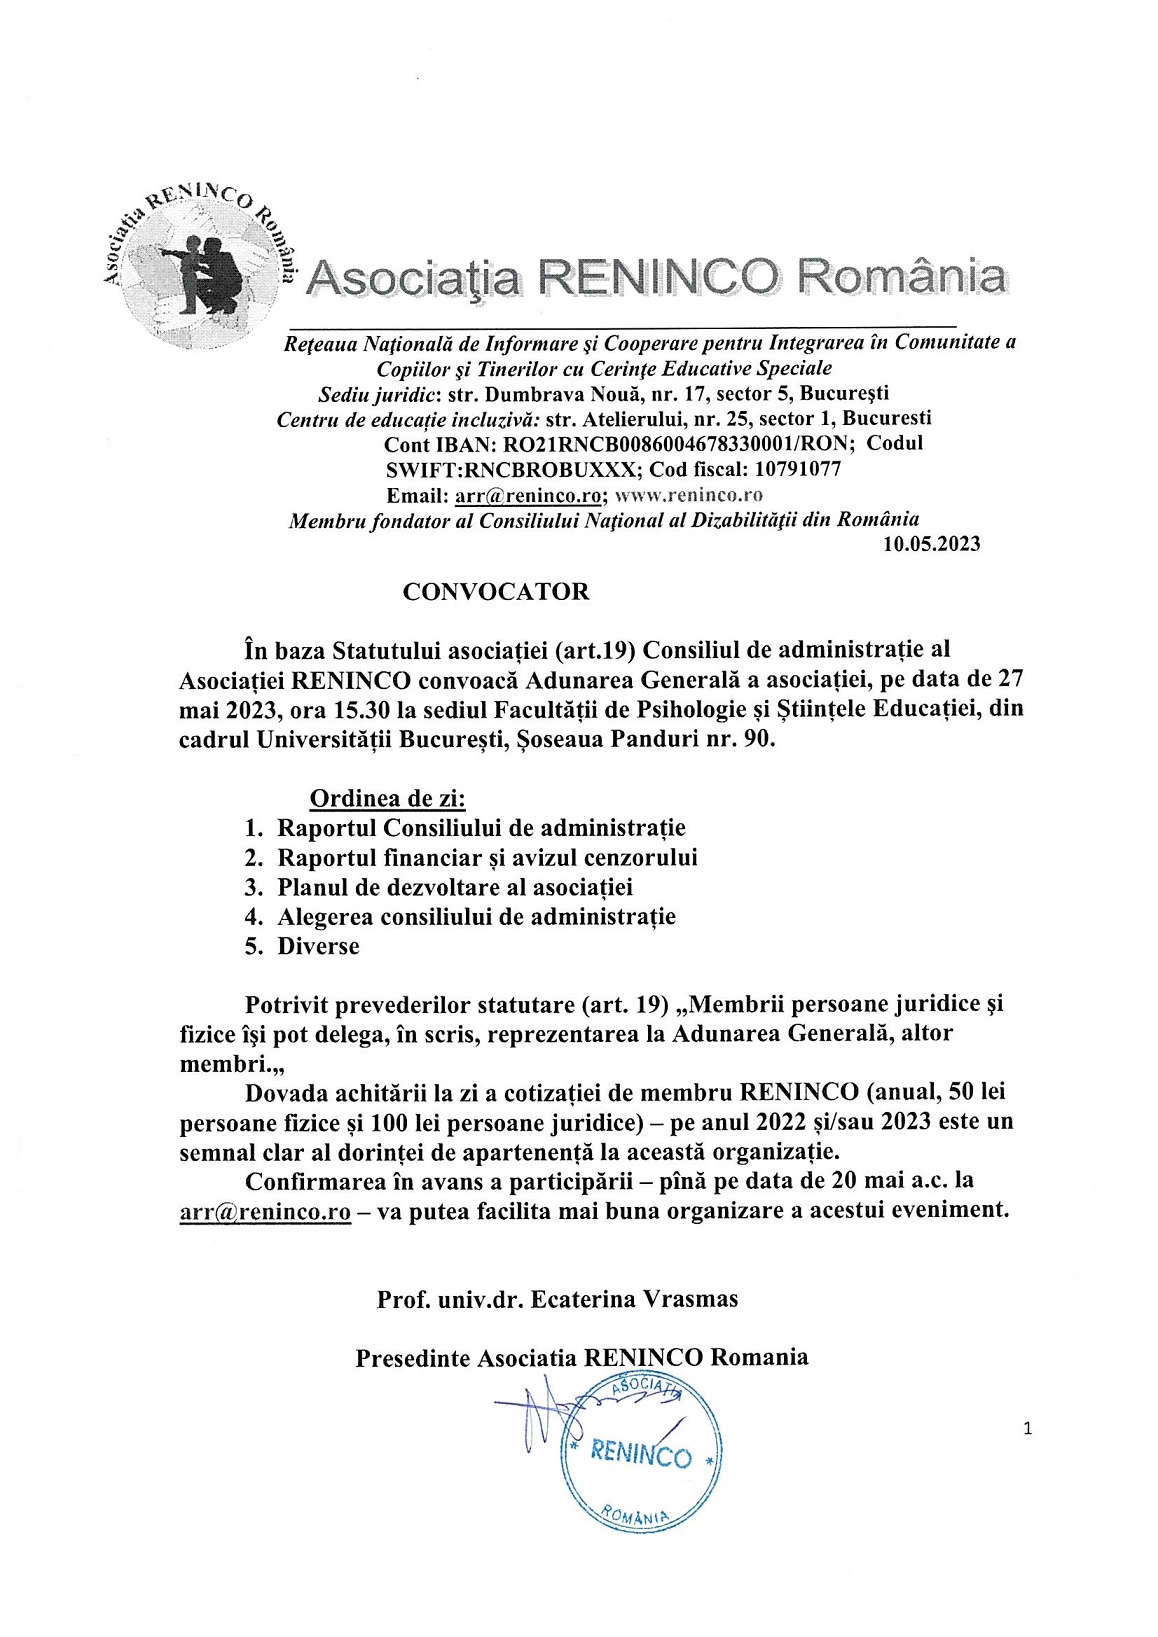 Convocator Adunare Generală RENINCO 27 mai 2023